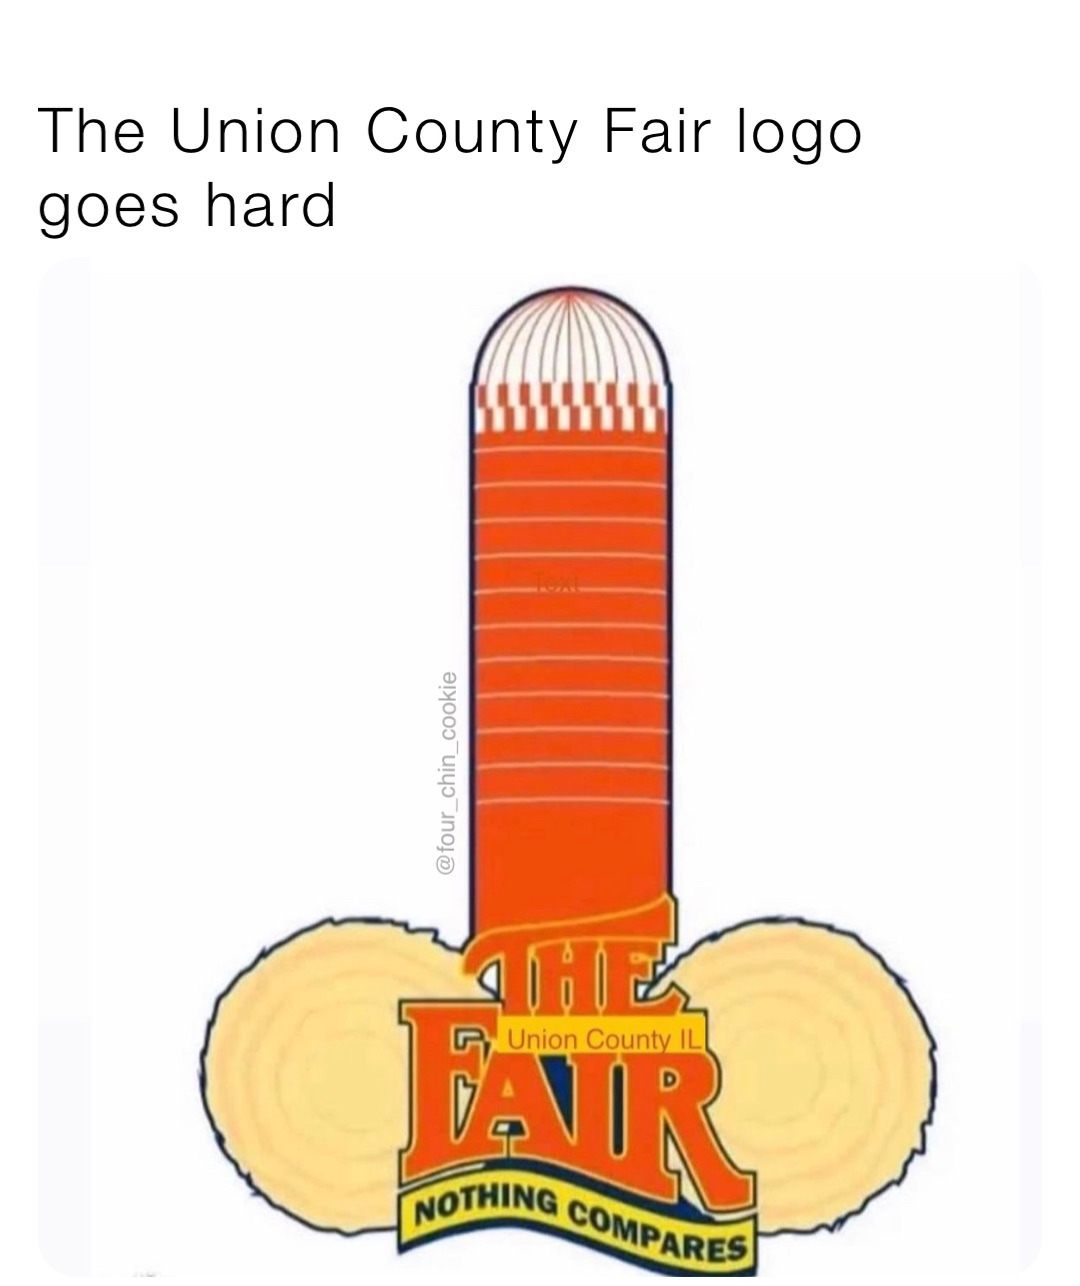 The Union County Fair logo goes hard